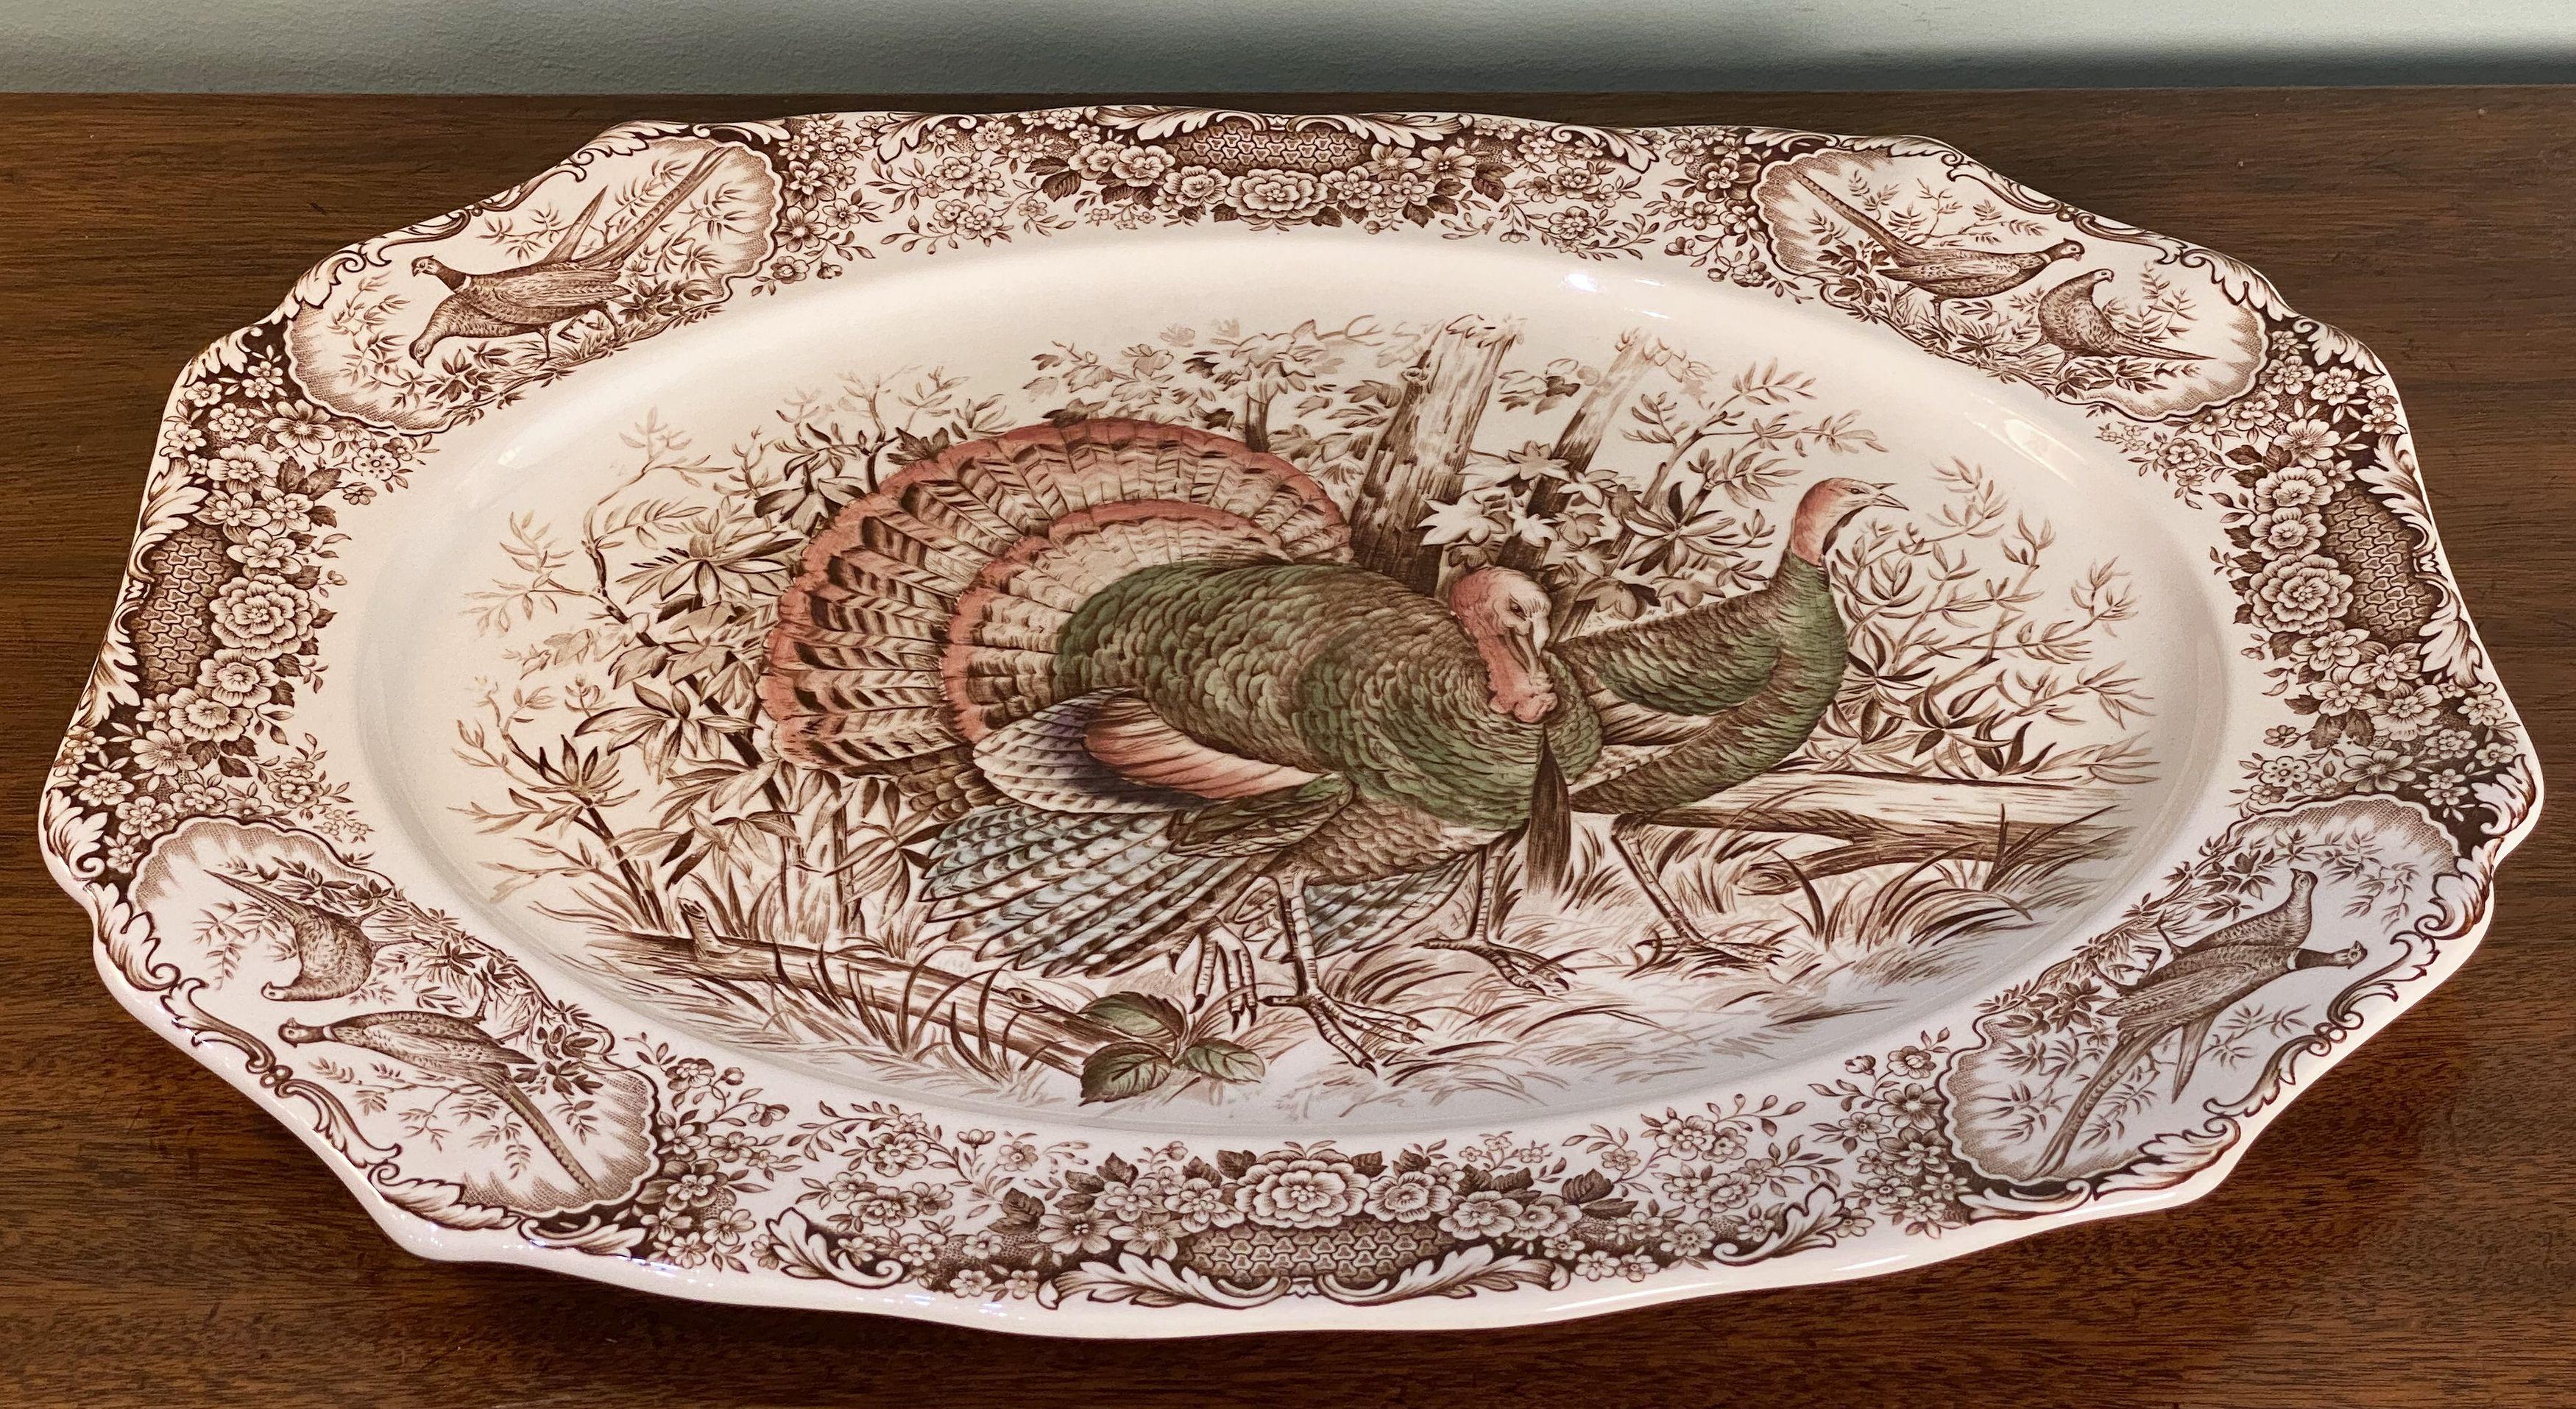 Un grand plat de service vintage représentant le Wild Turkey, un motif amérindien brun et blanc réalisé par la célèbre entreprise de poterie anglaise Johnson Brothers.

Avec une étiquette brune authentique du milieu du siècle au verso.

Parfait